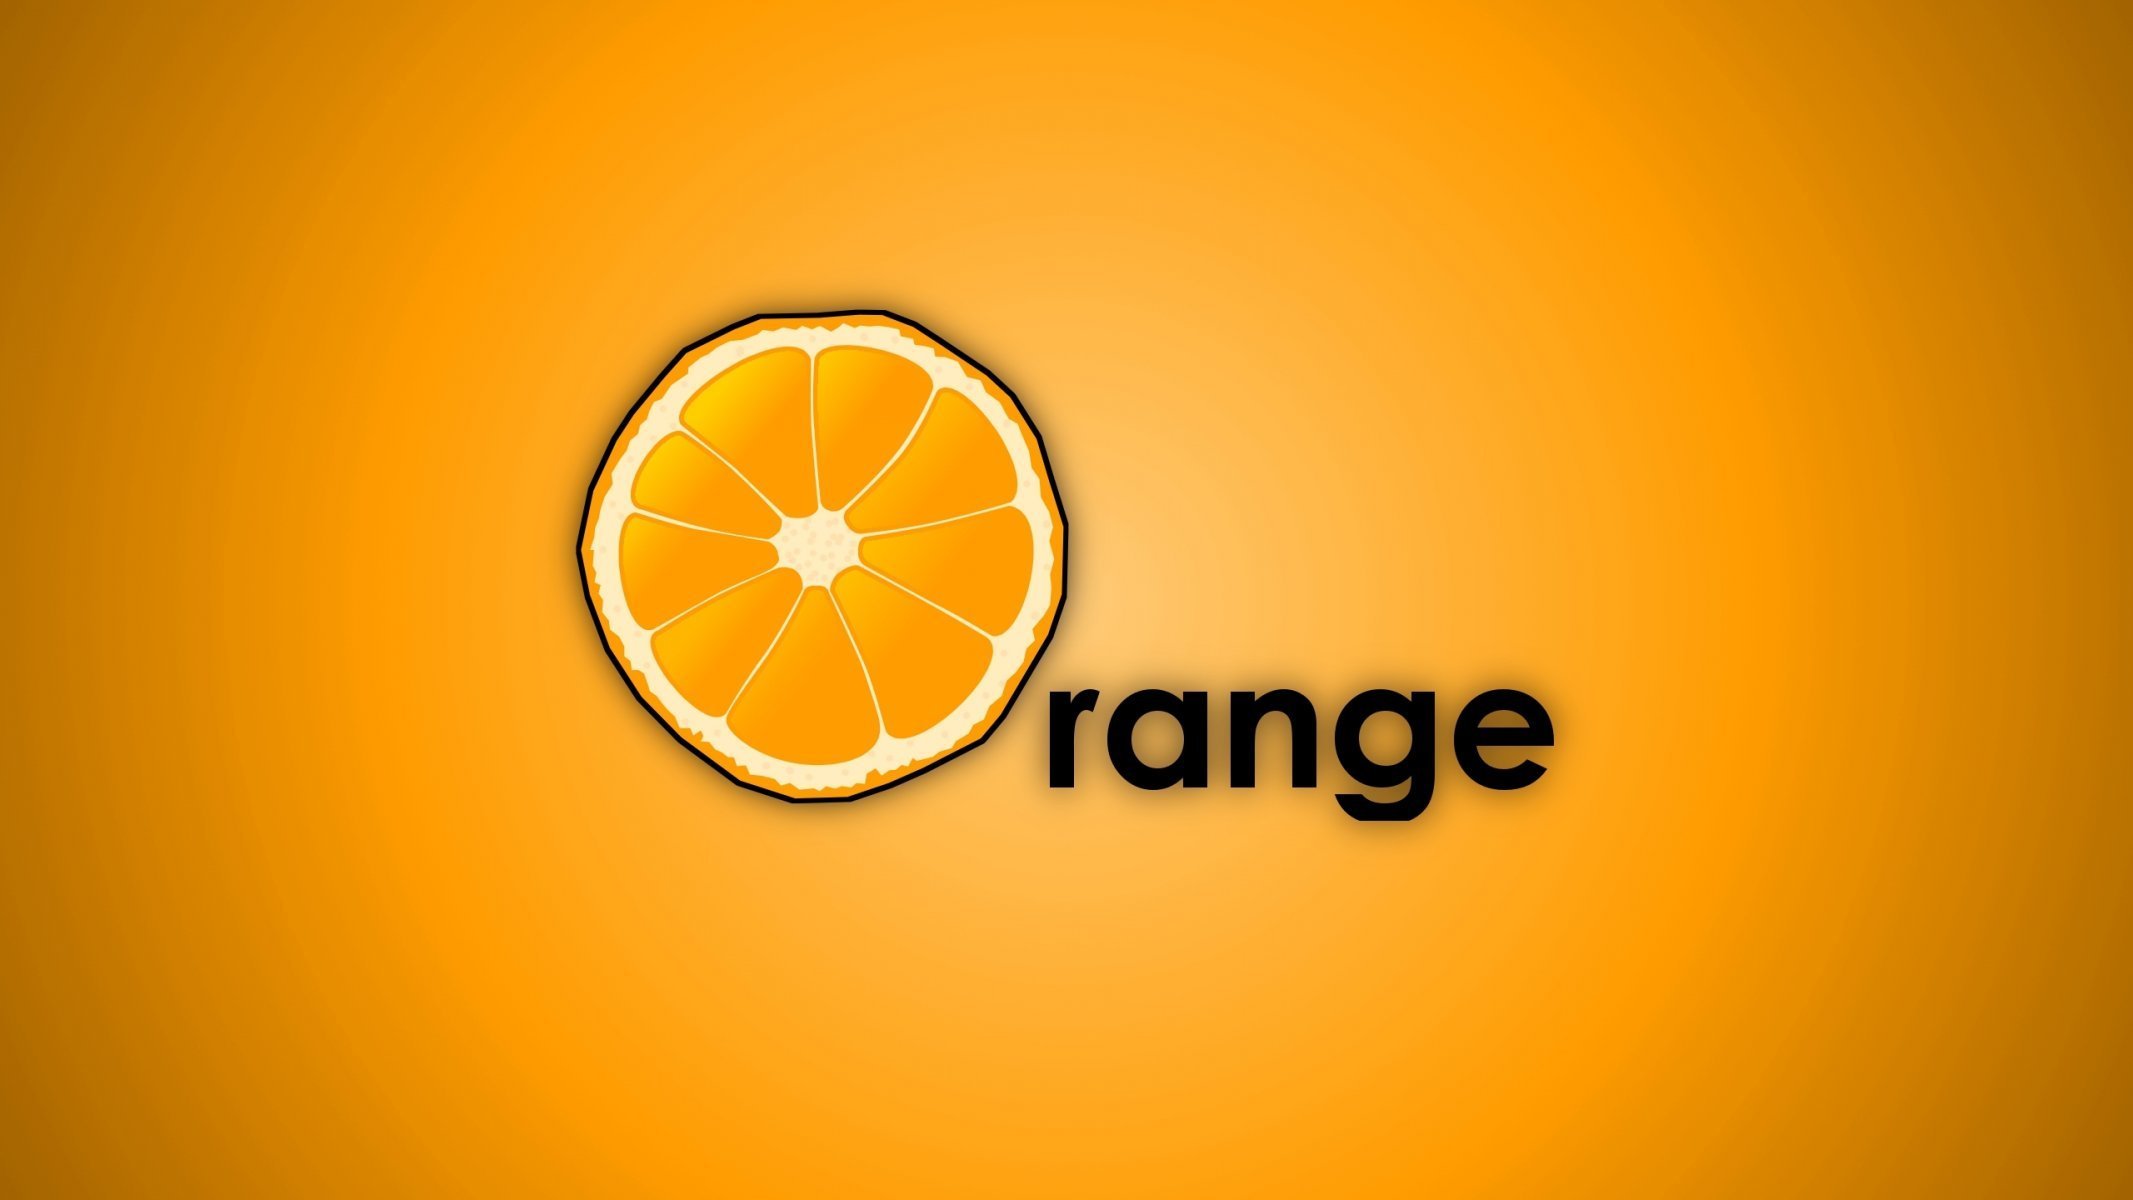 Оранжевый обои с надписями фото